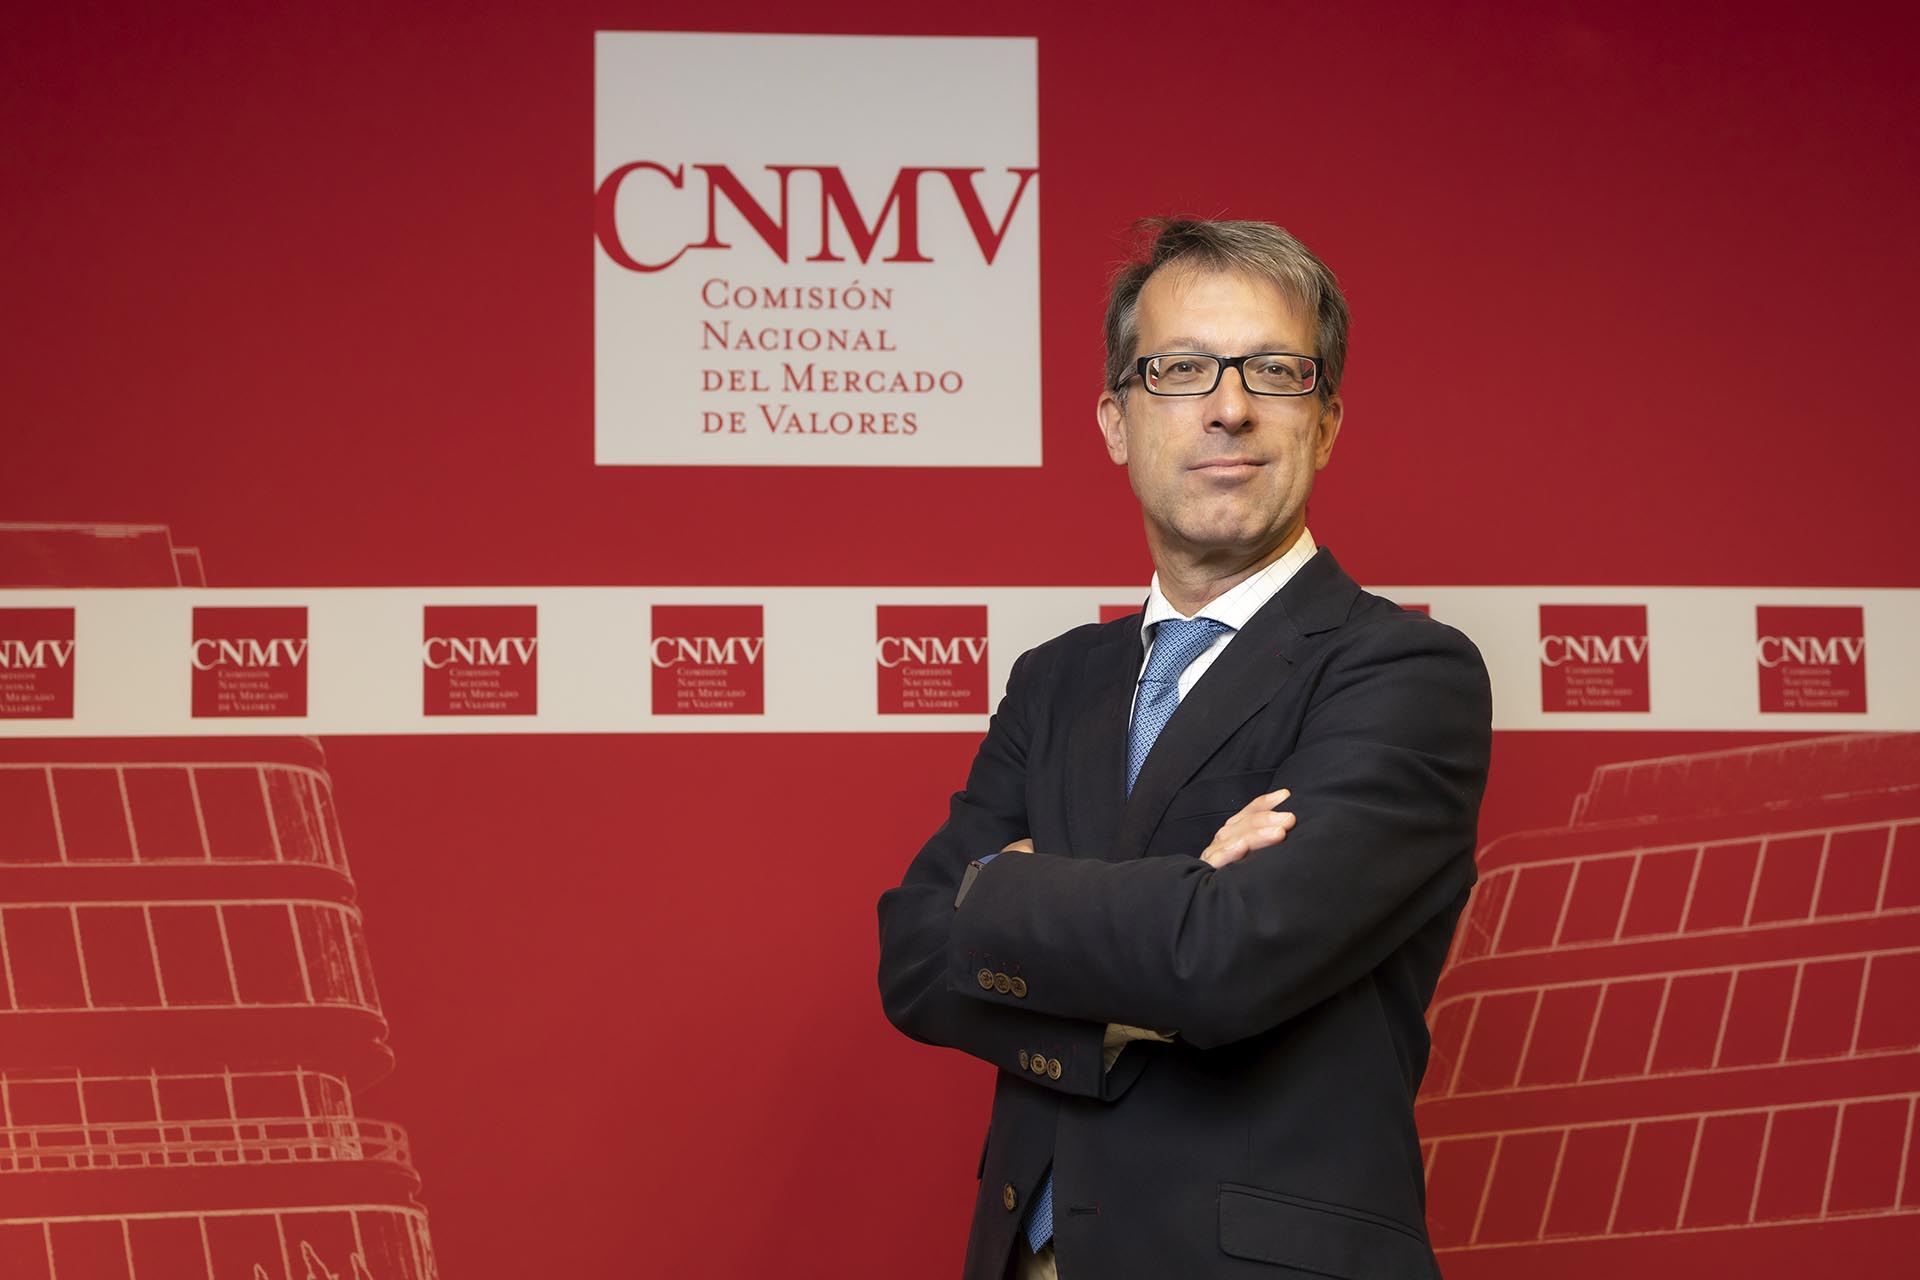  Imagen de Mariano Bacigalupo, consejero de la CNMV, de pie sobre fondo corporativo (se abrirá ventana nueva)